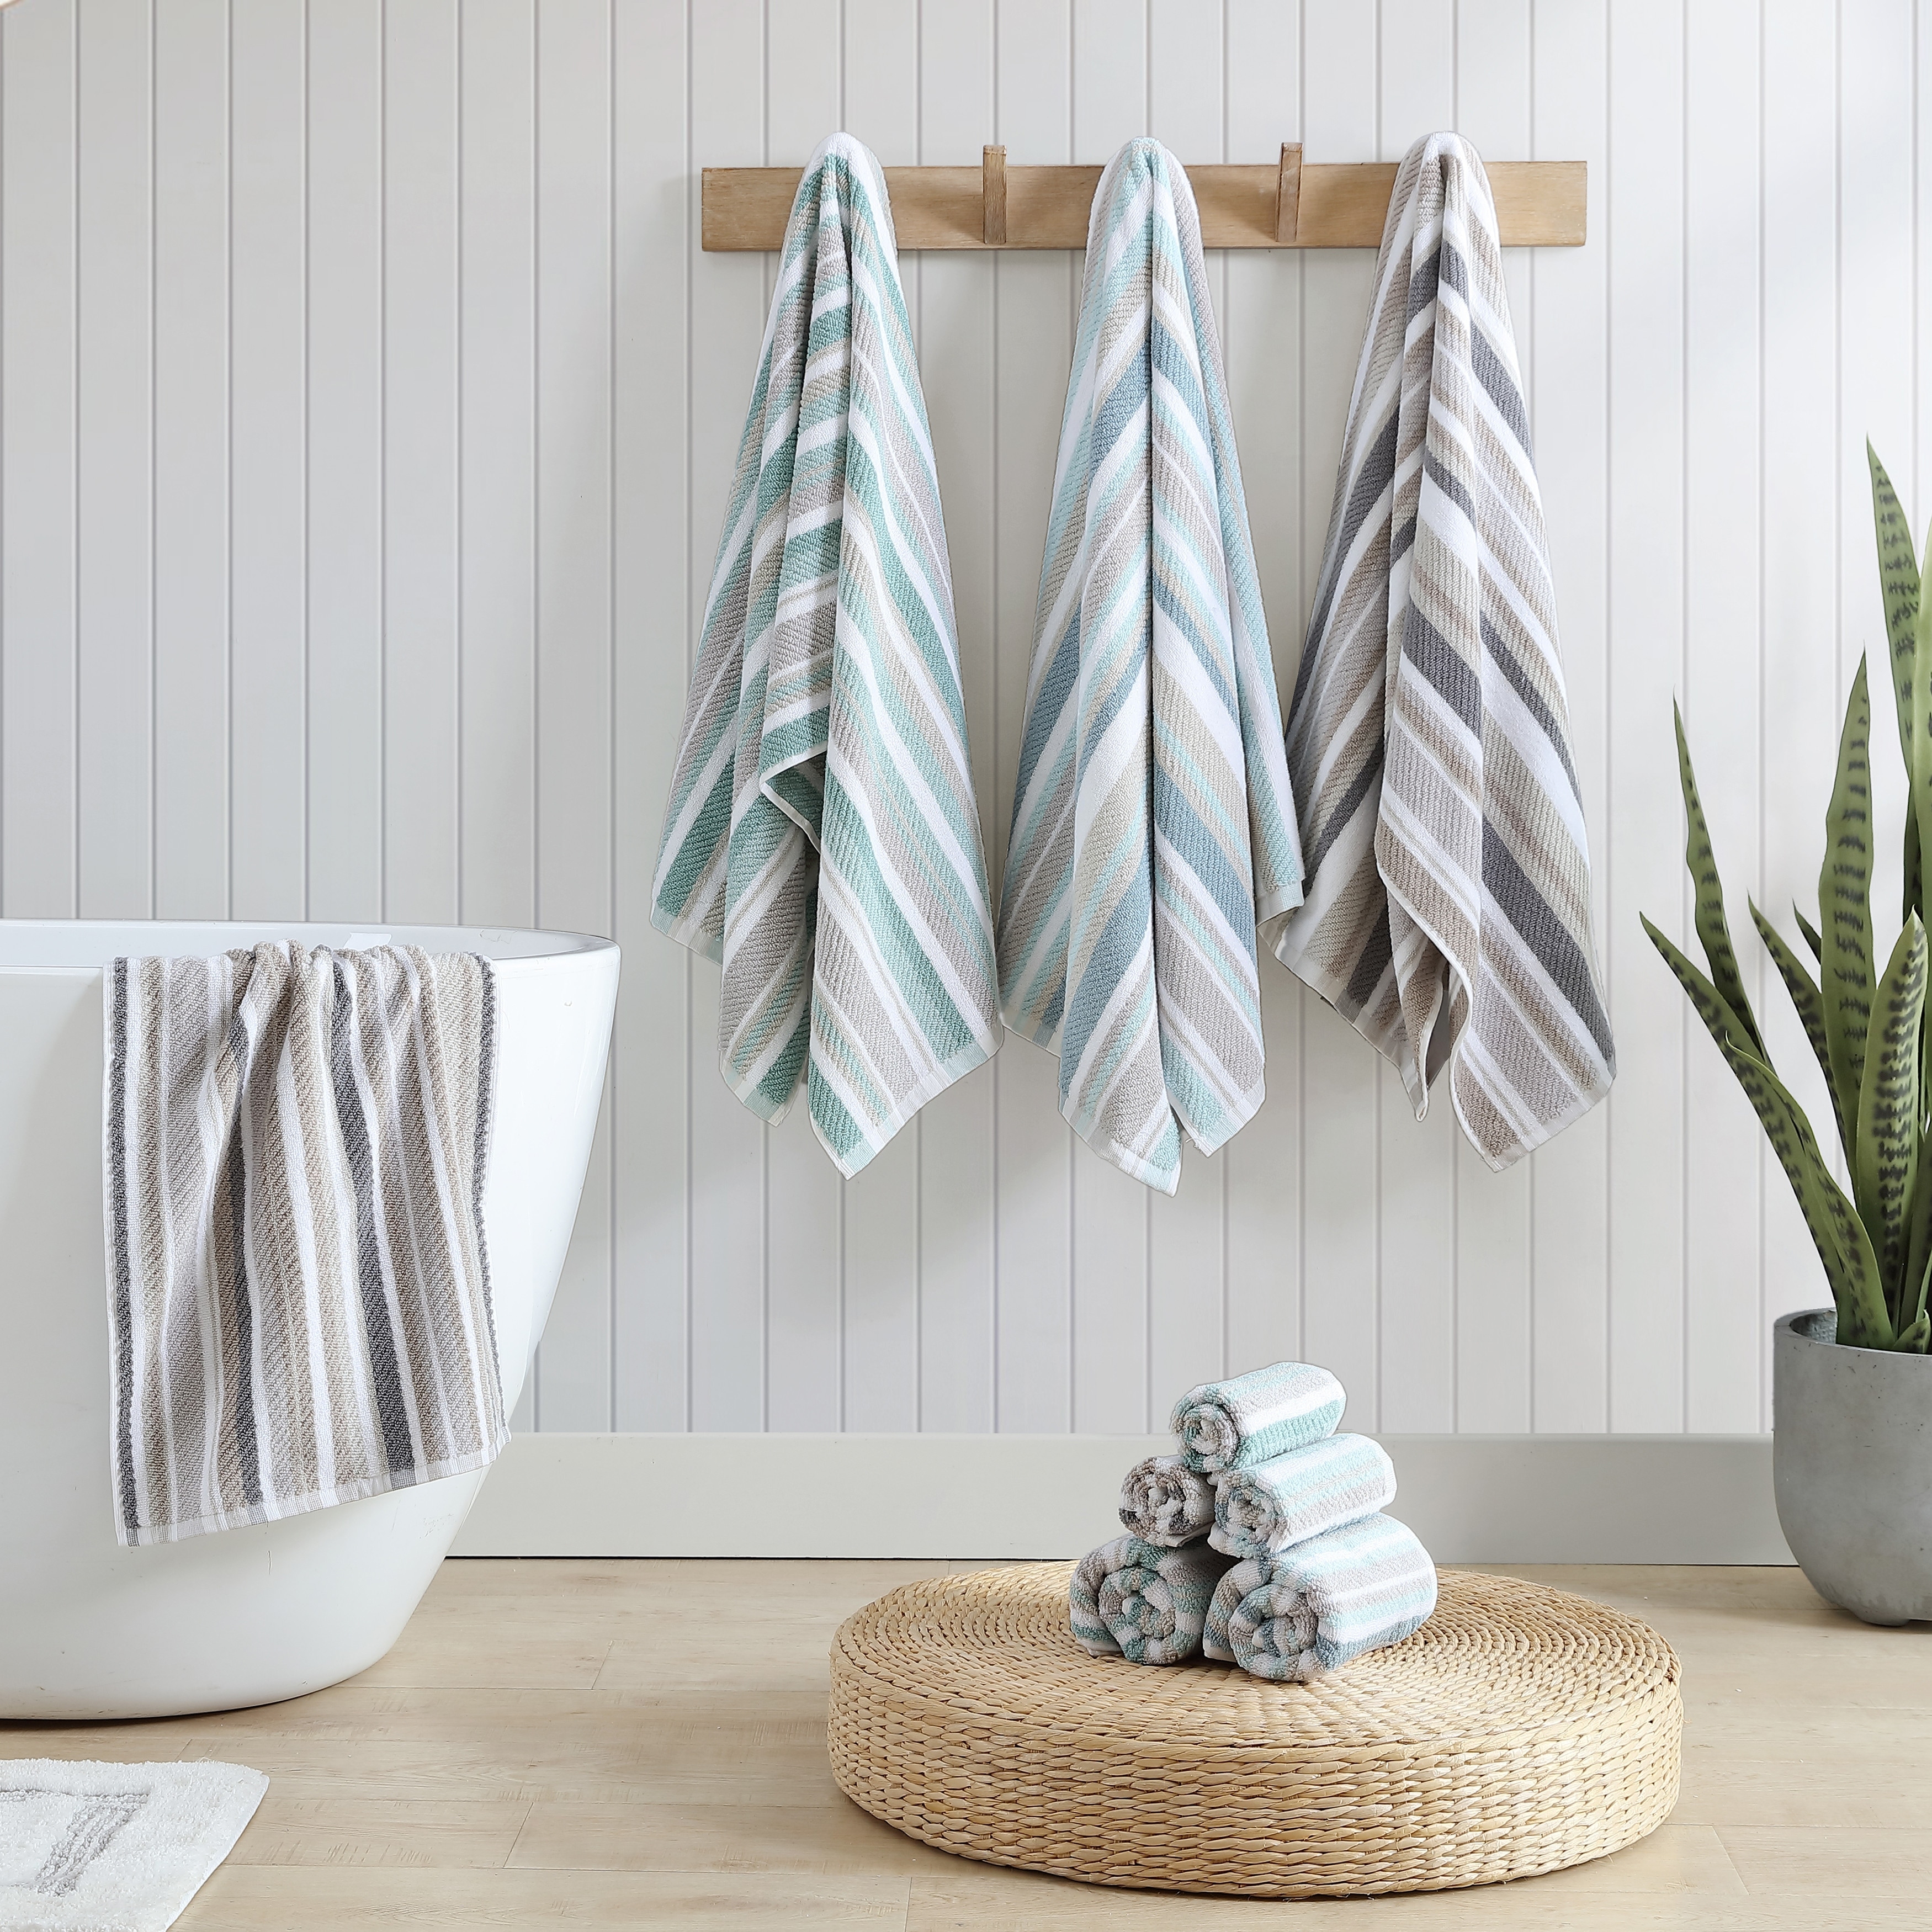 3 Piece Towel Set with Stripe Design